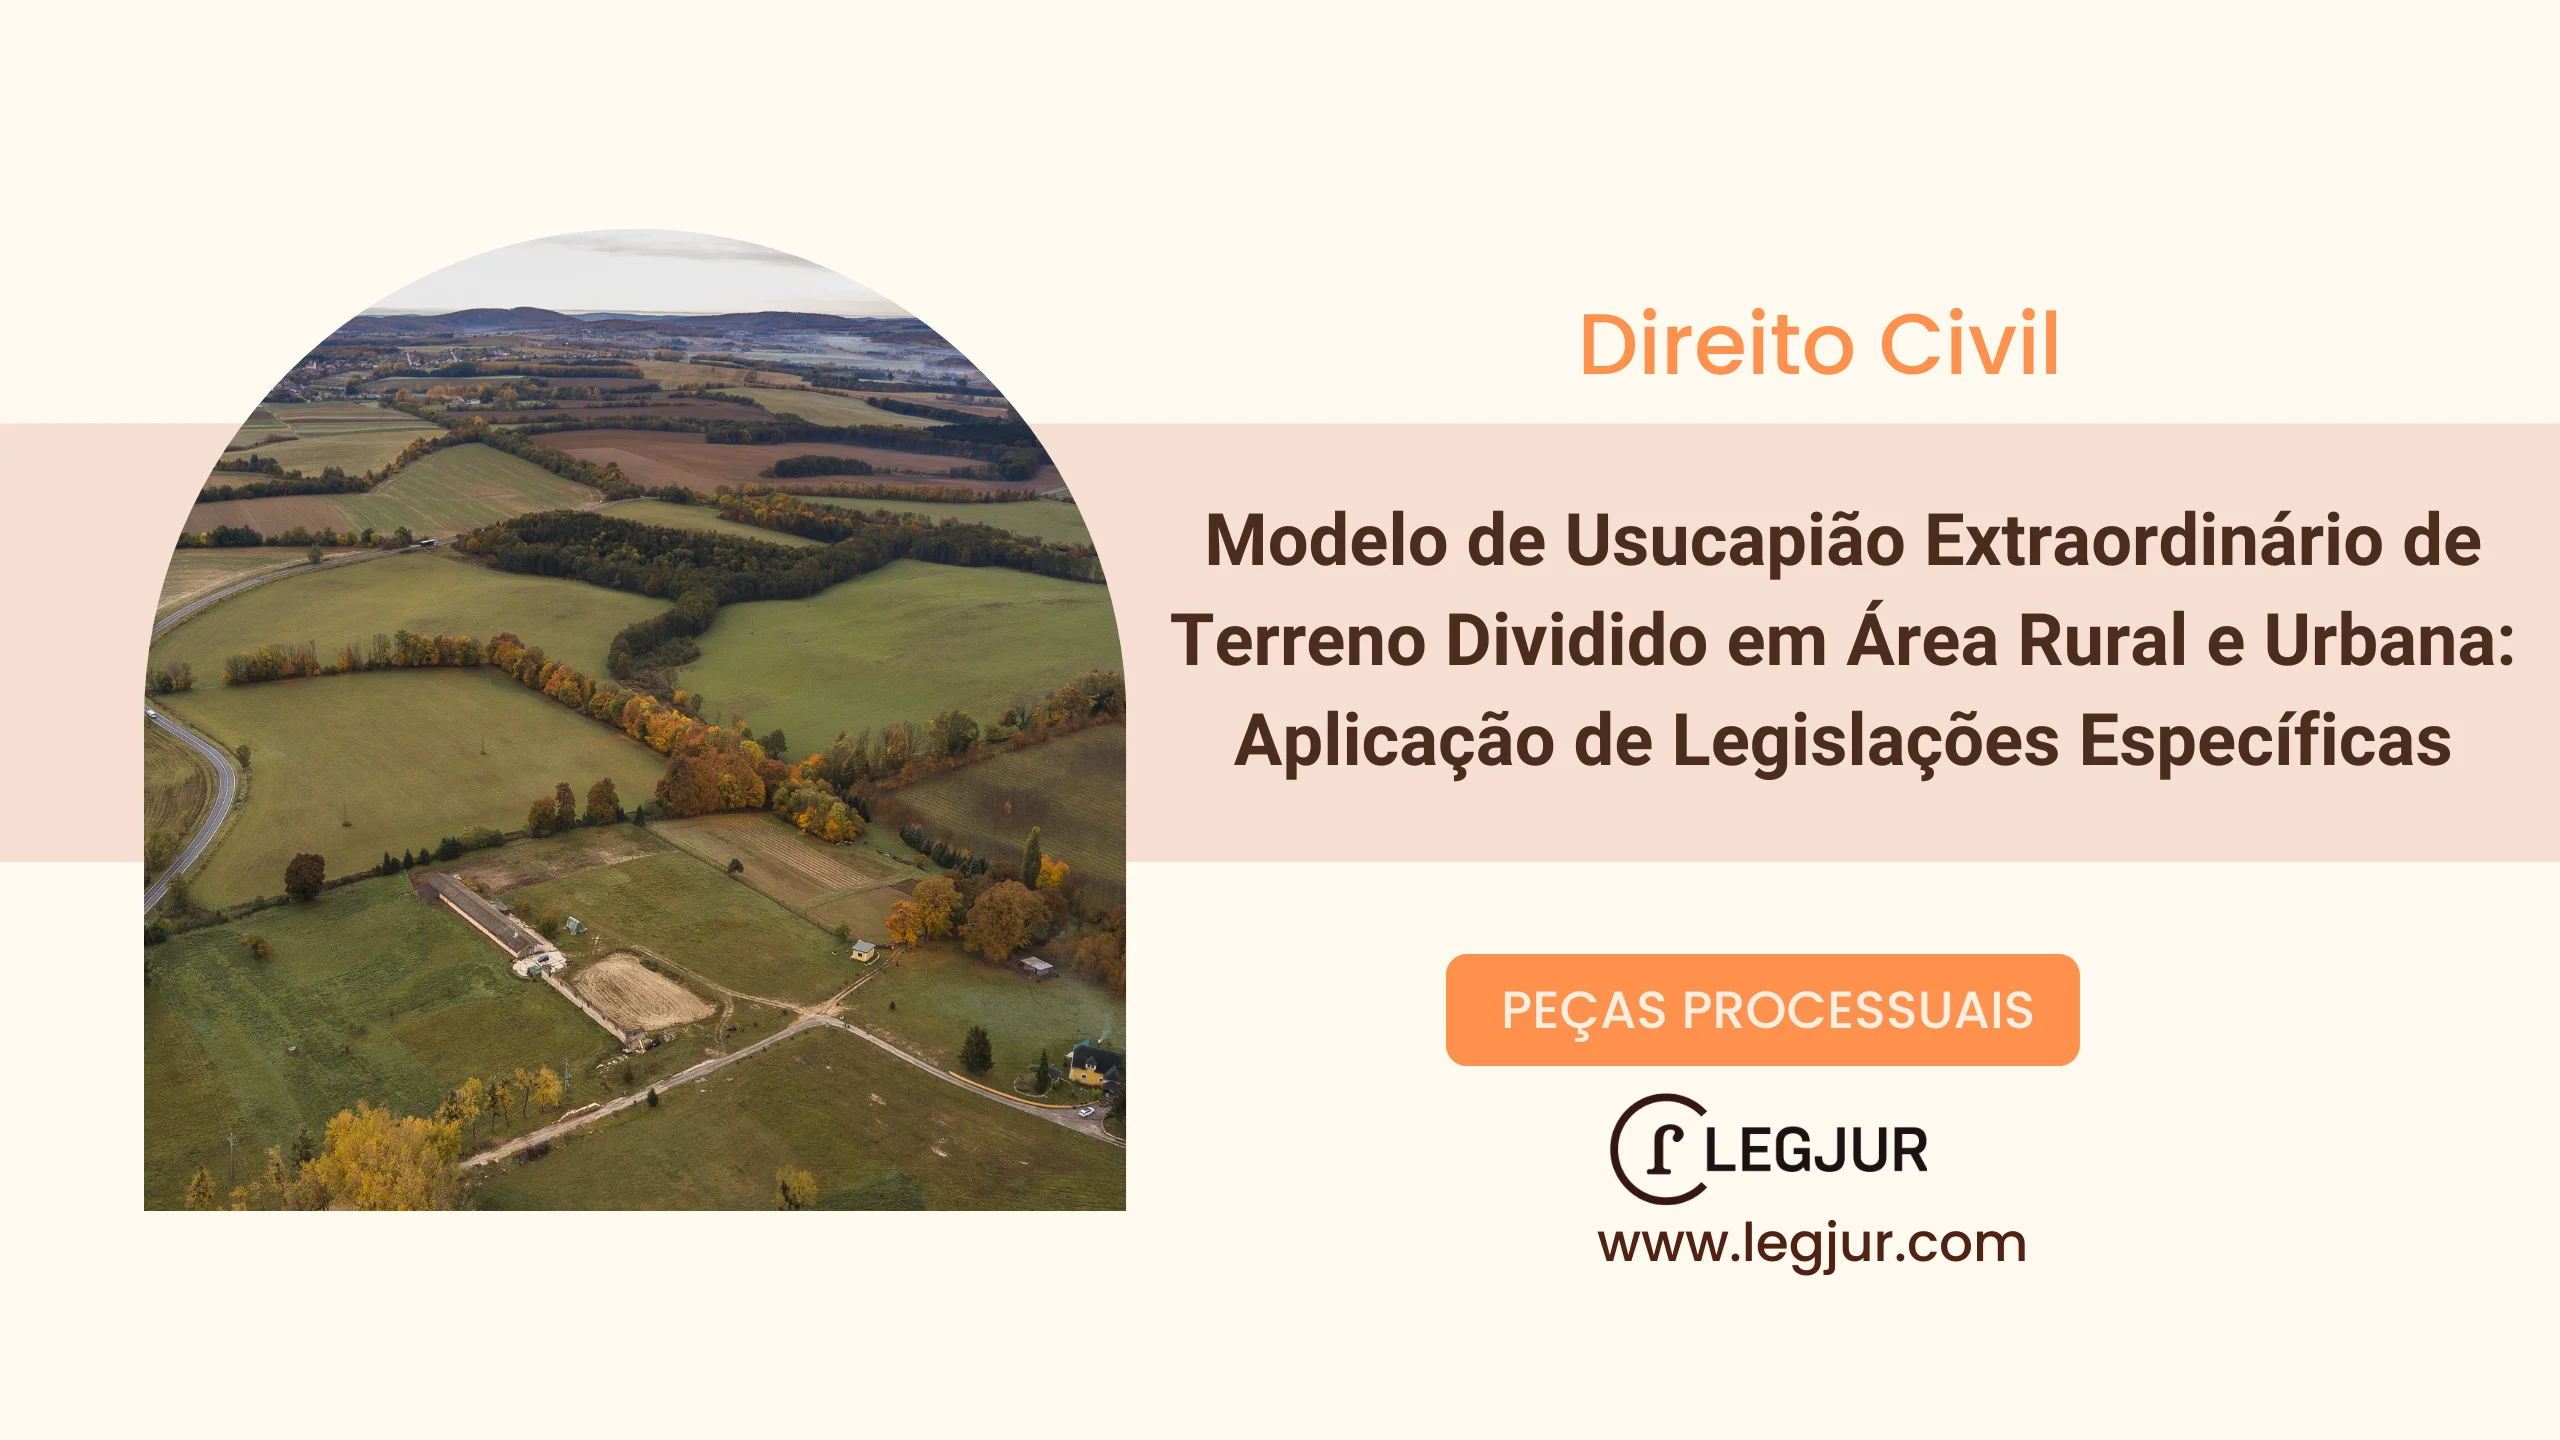 Modelo de Usucapião Extraordinário de Terreno Dividido em Área Rural e Urbana: Aplicação de Legislações Específicas